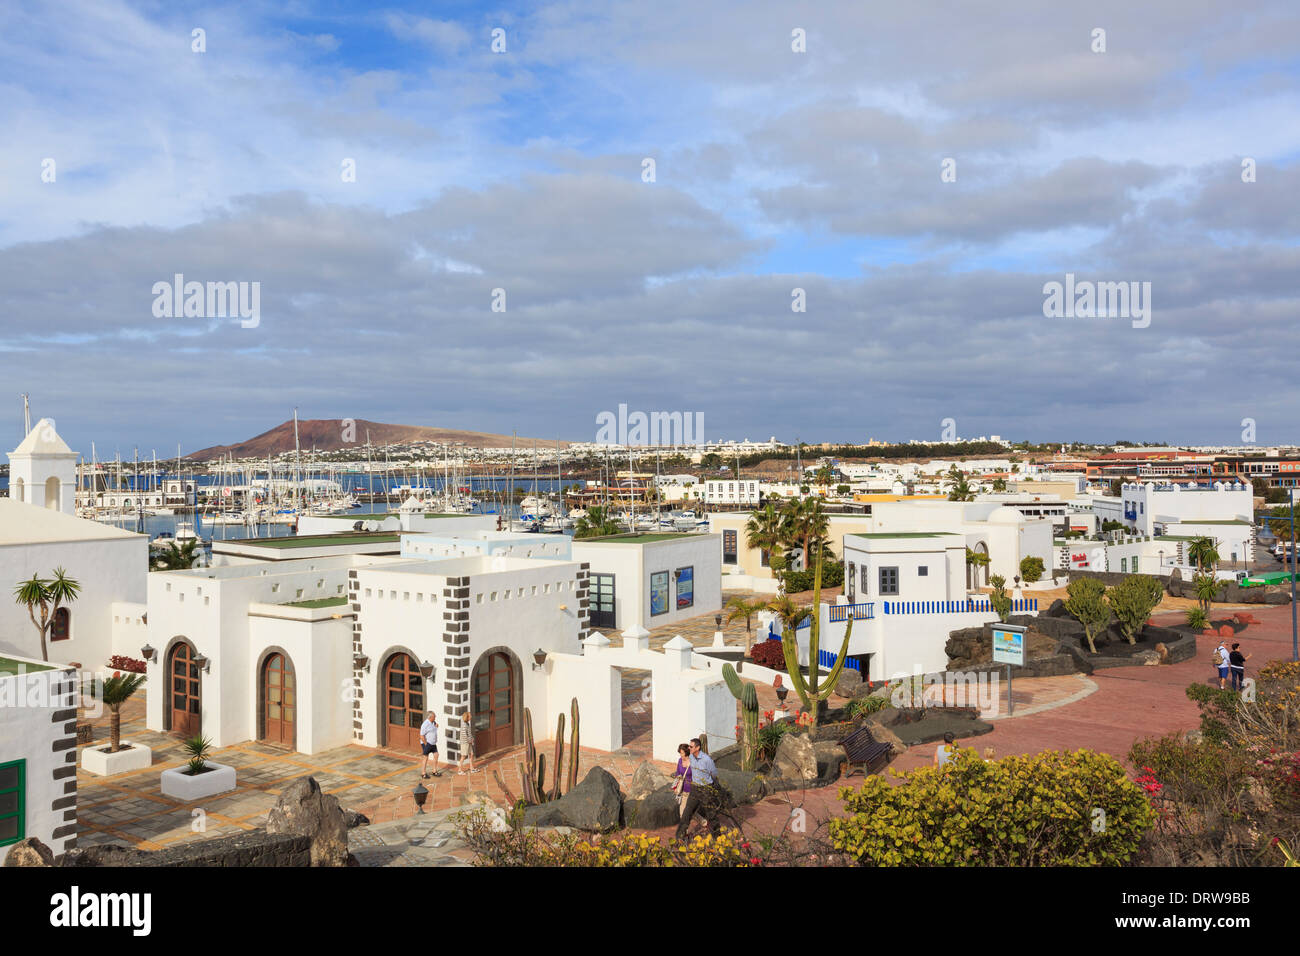 Les bâtiments blancs en nouvelle gamme moderne développement de Marina Rubicon, Playa Blanca, Lanzarote, îles Canaries, Espagne Banque D'Images